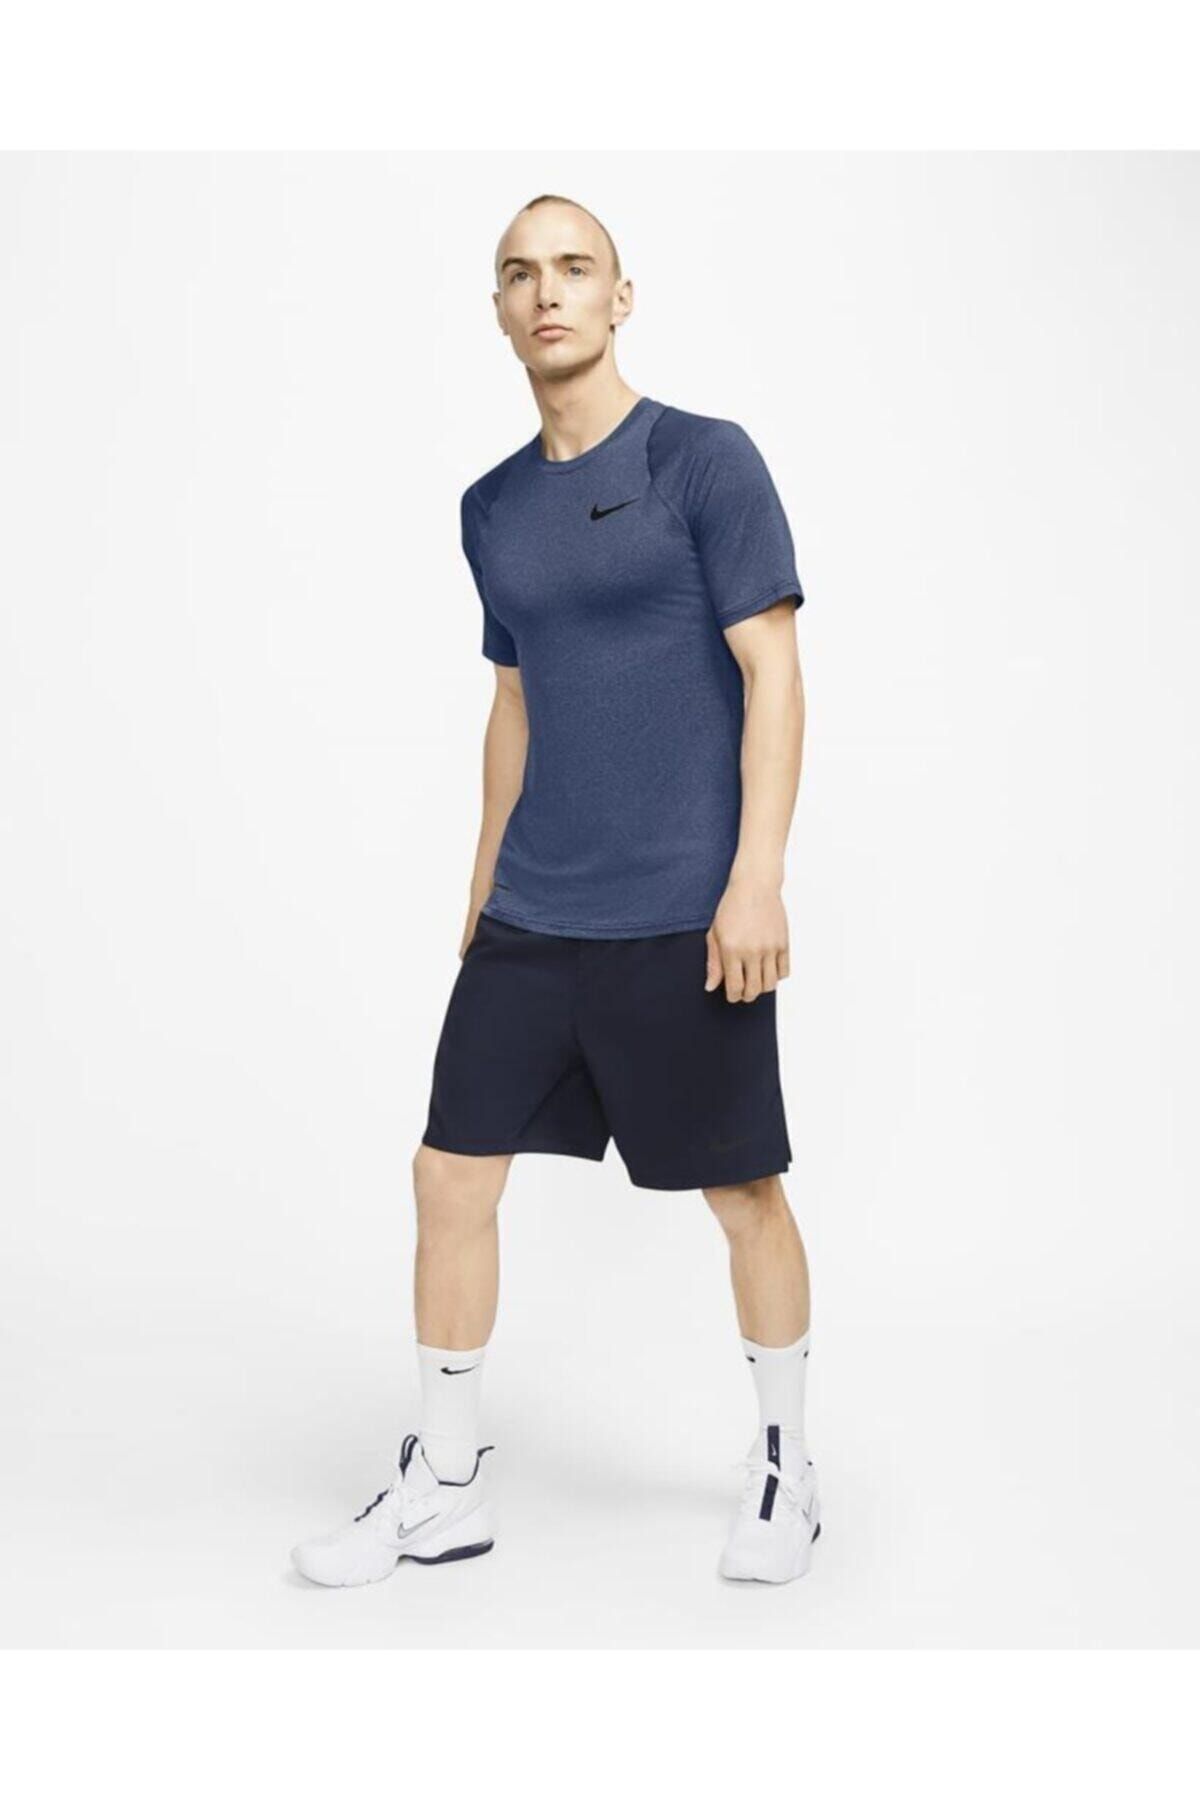 Nike Pro Short Sleeve Erkek Tshirt Cj4842-469